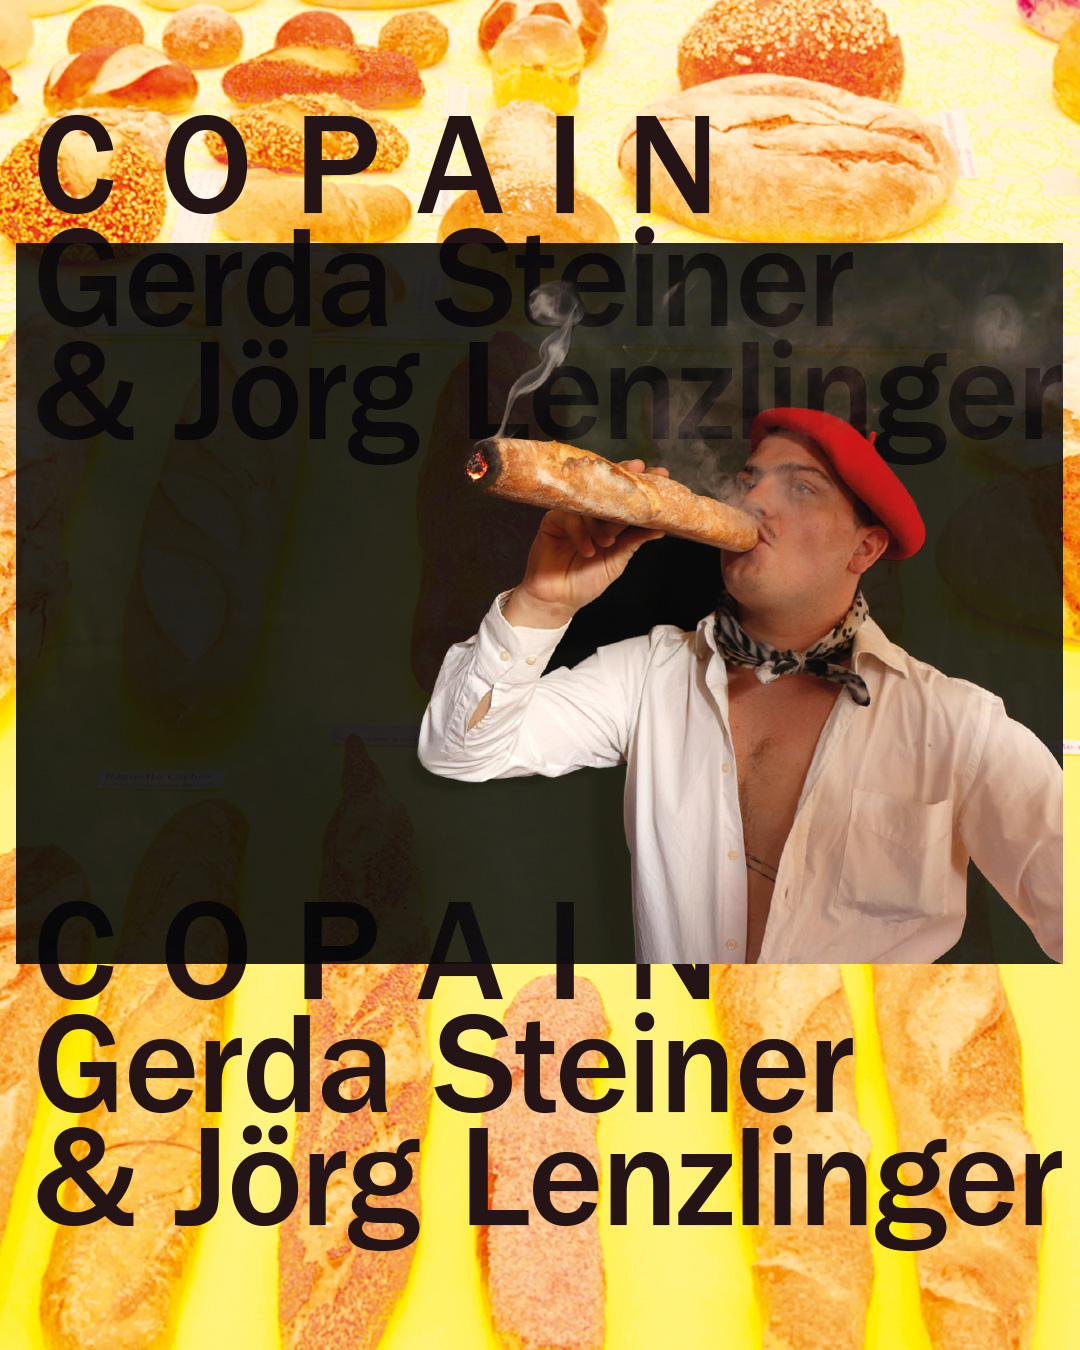 COPAIN exhibition at the Mühlerama